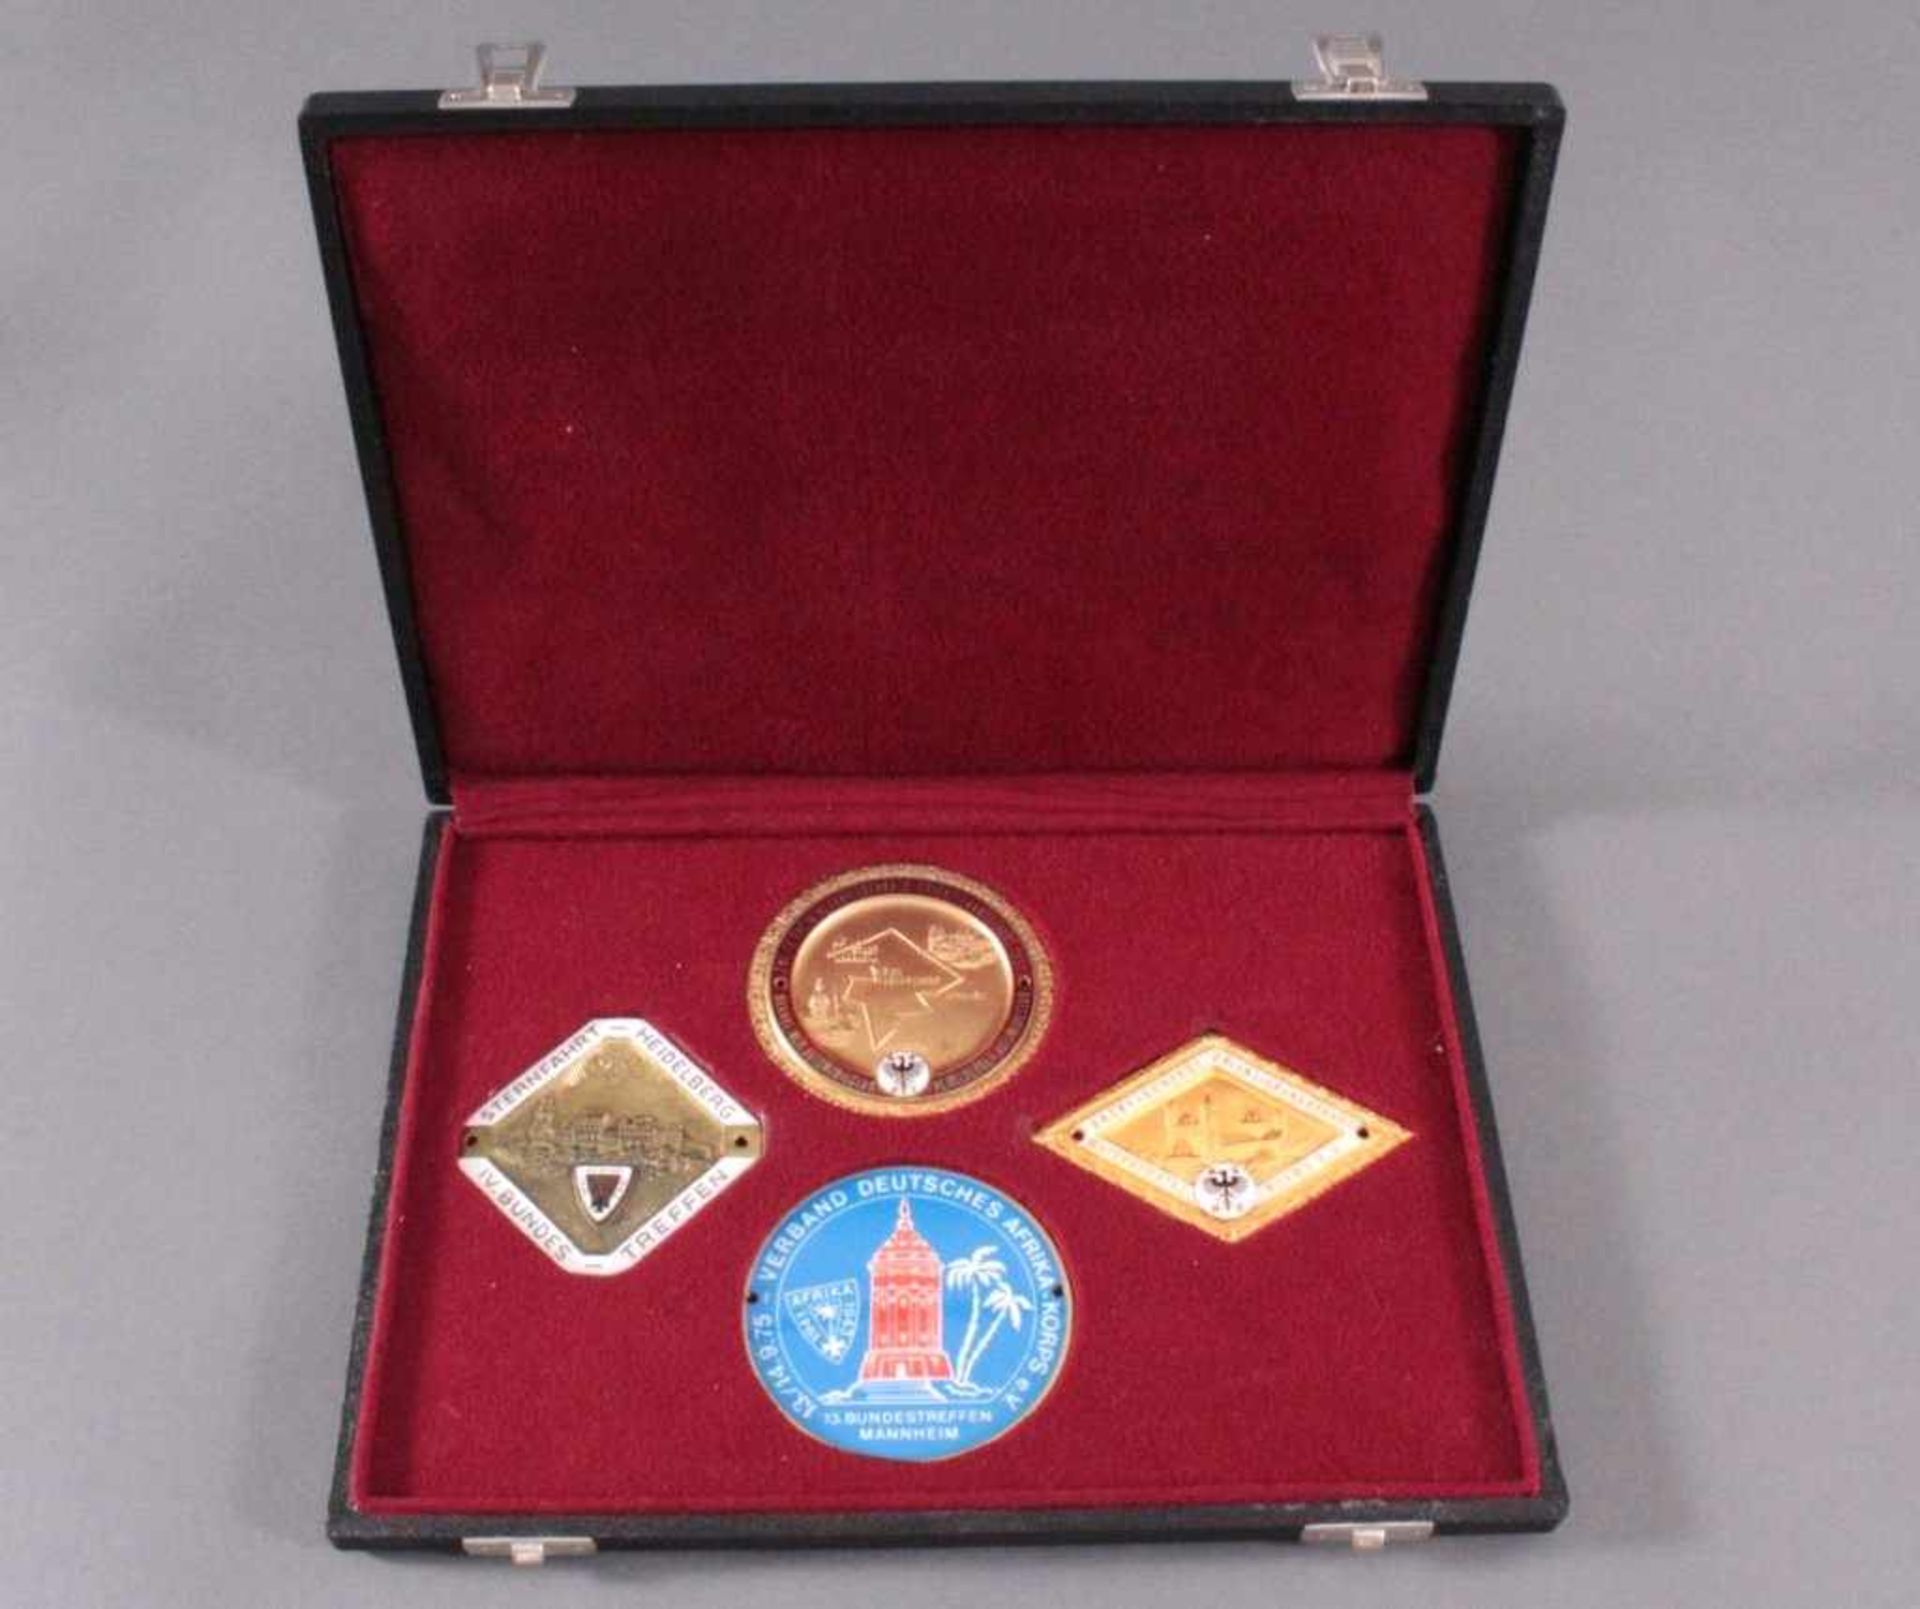 4 Veranstaltungsplaketten, Bronze mit Emaille in Schatulle1x Verband Deutsches Afrika-Korps e.V. 13.